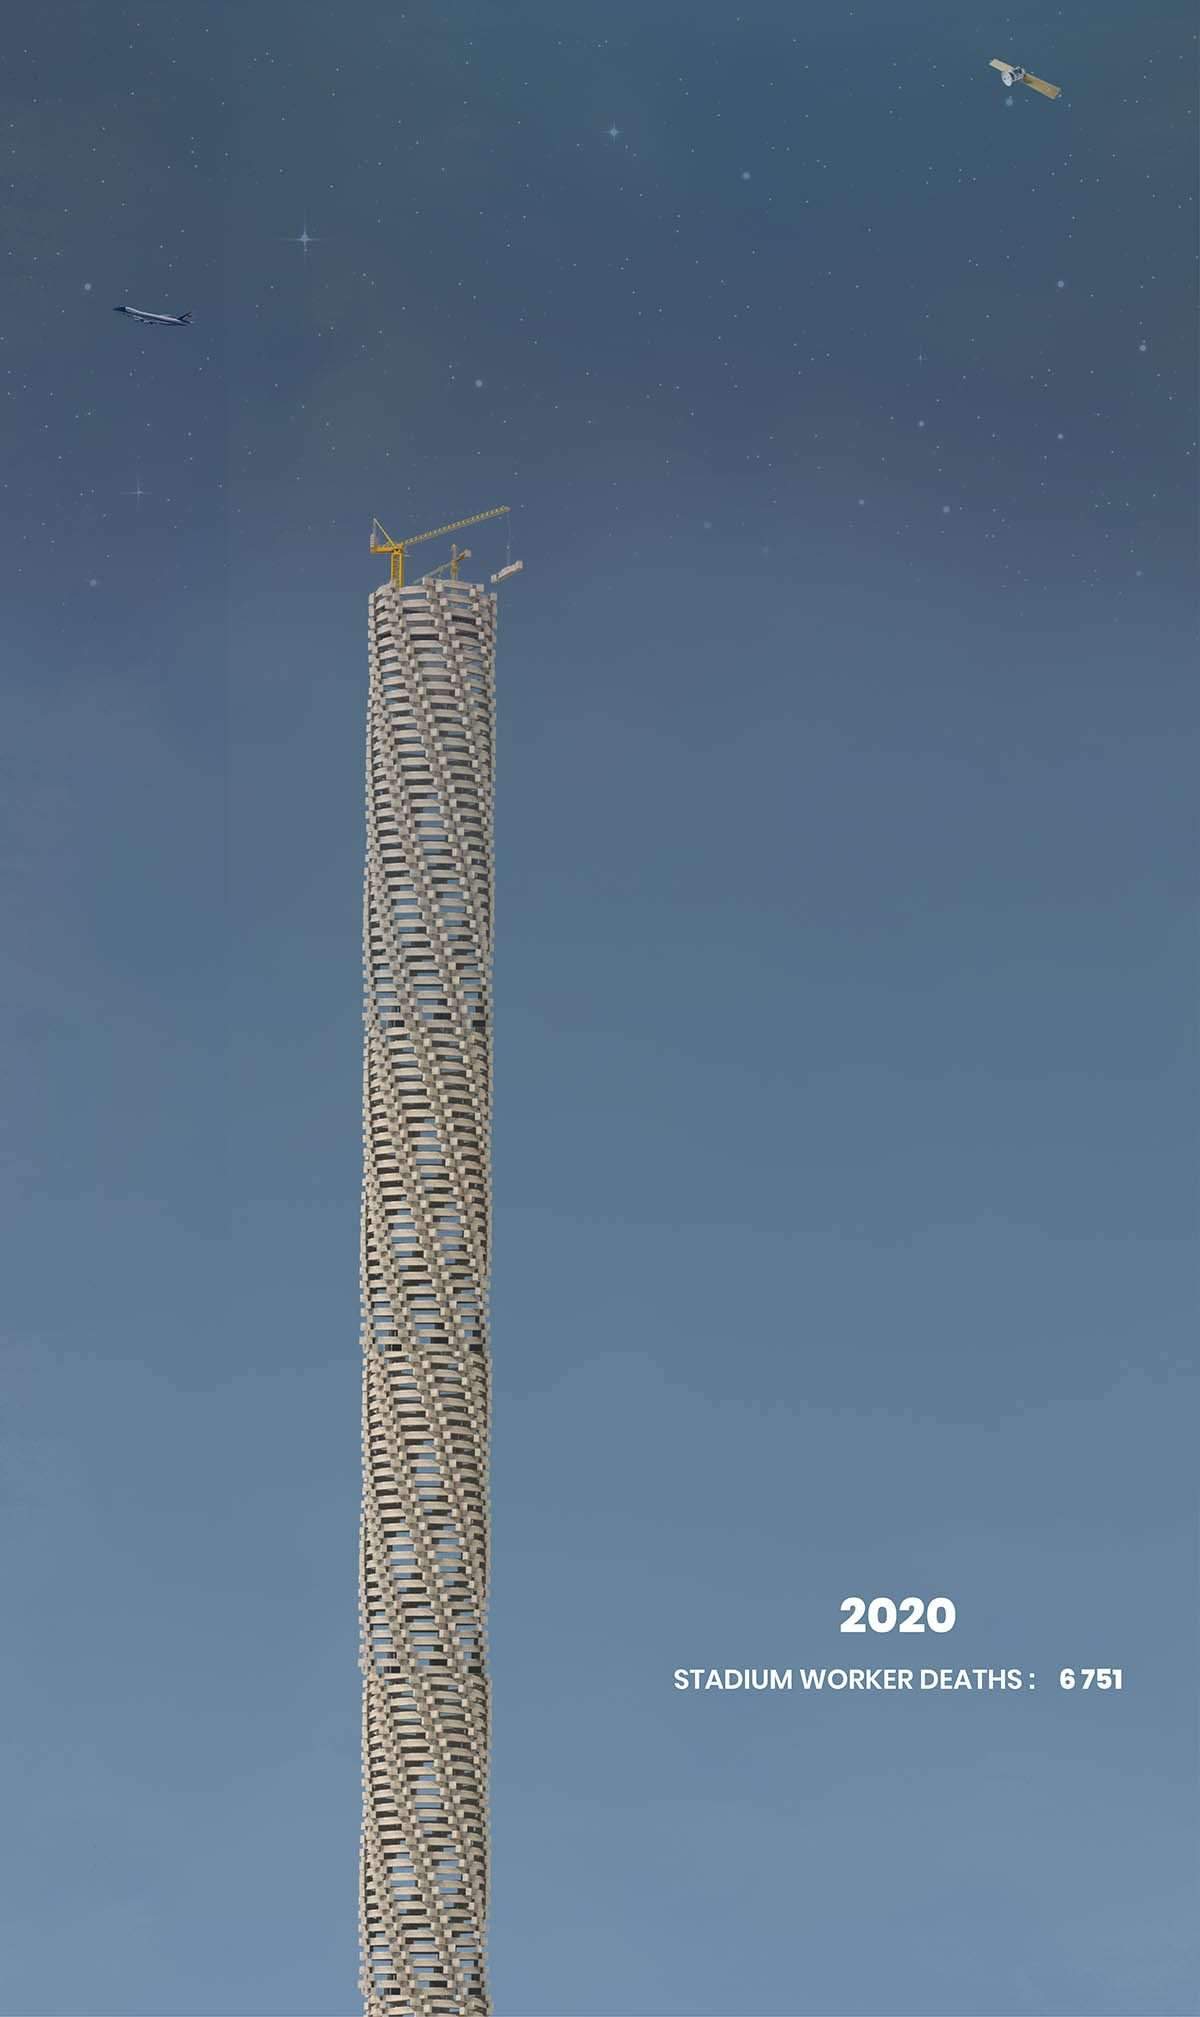 تصميم نصب تذكاري للمتوفين في مواقع بناء ملاعب كأس العالم بقطر